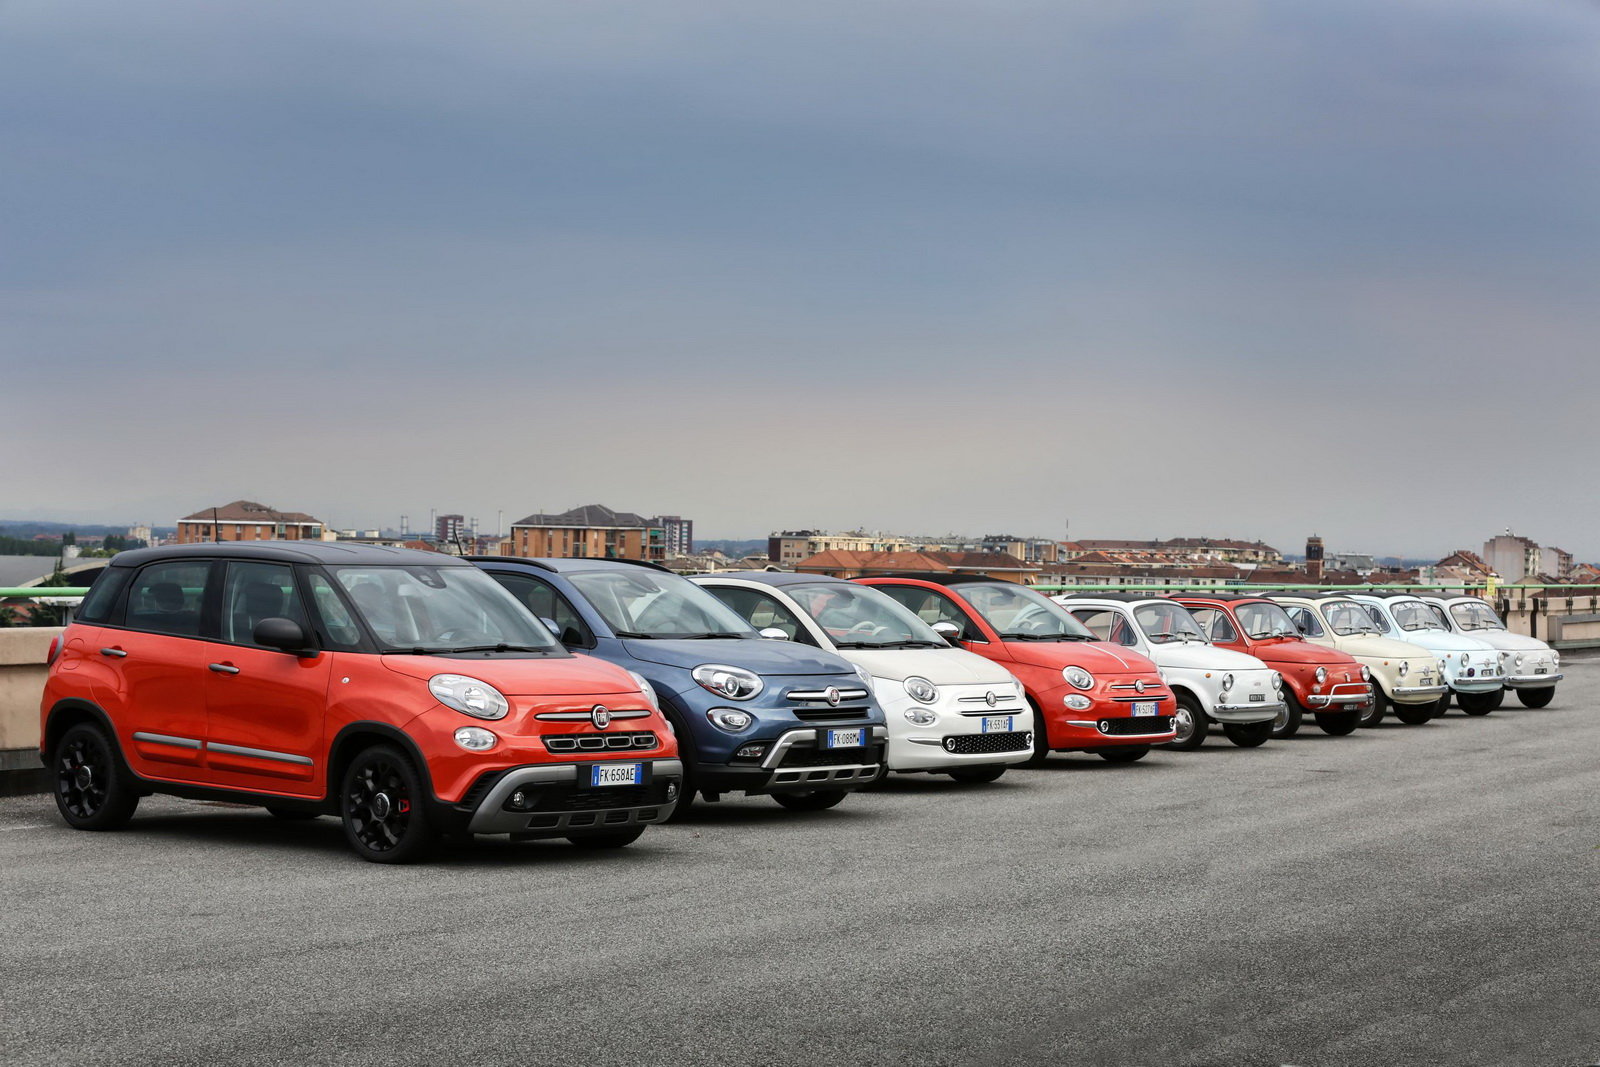 Fiat 500 slaví už 60 let, za tu dobu pěkně vyrostl